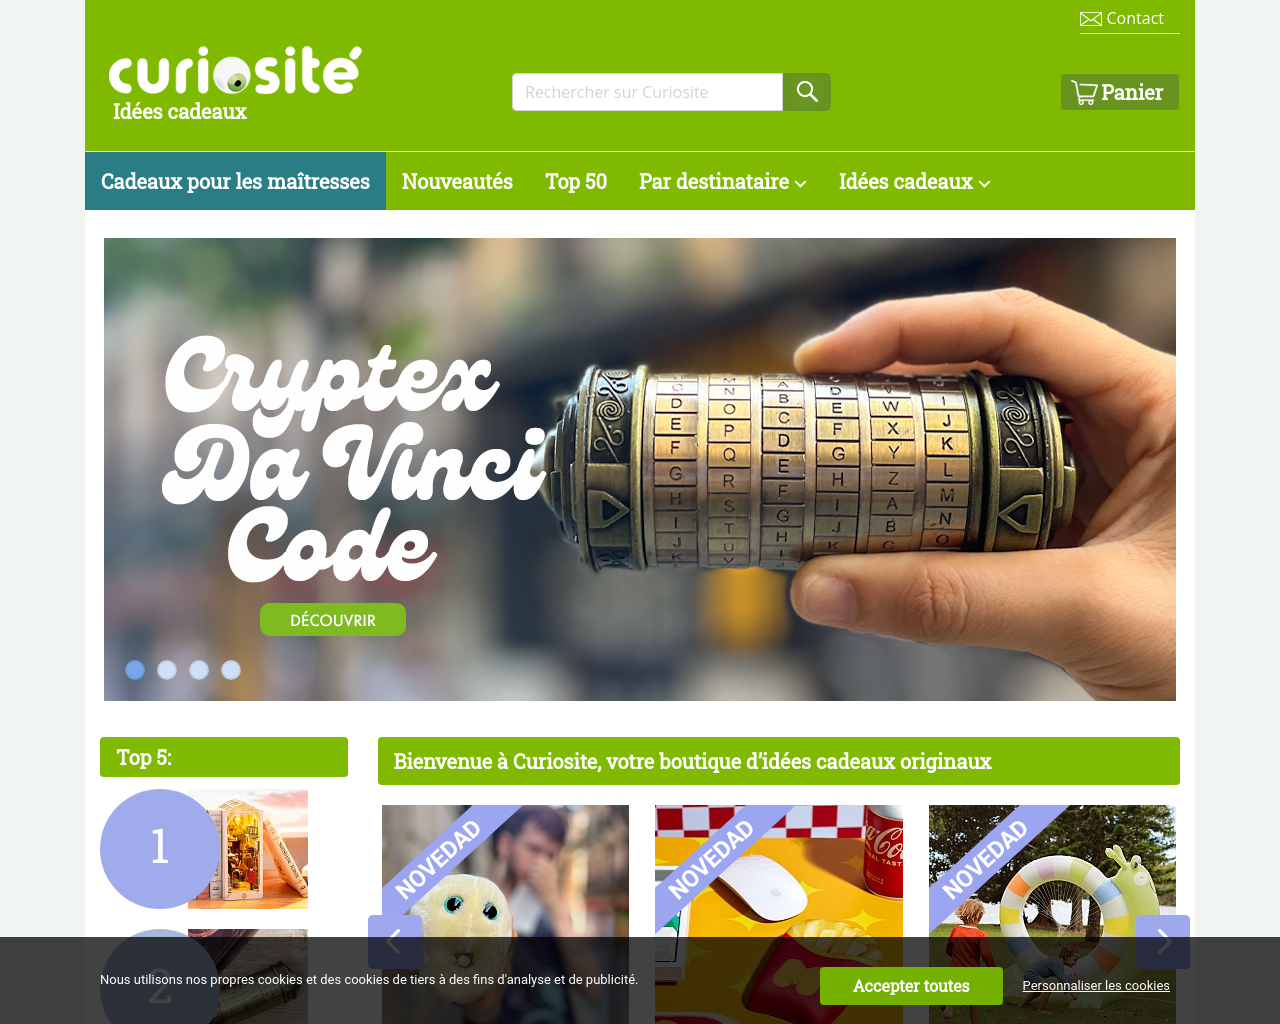 curiosite.com